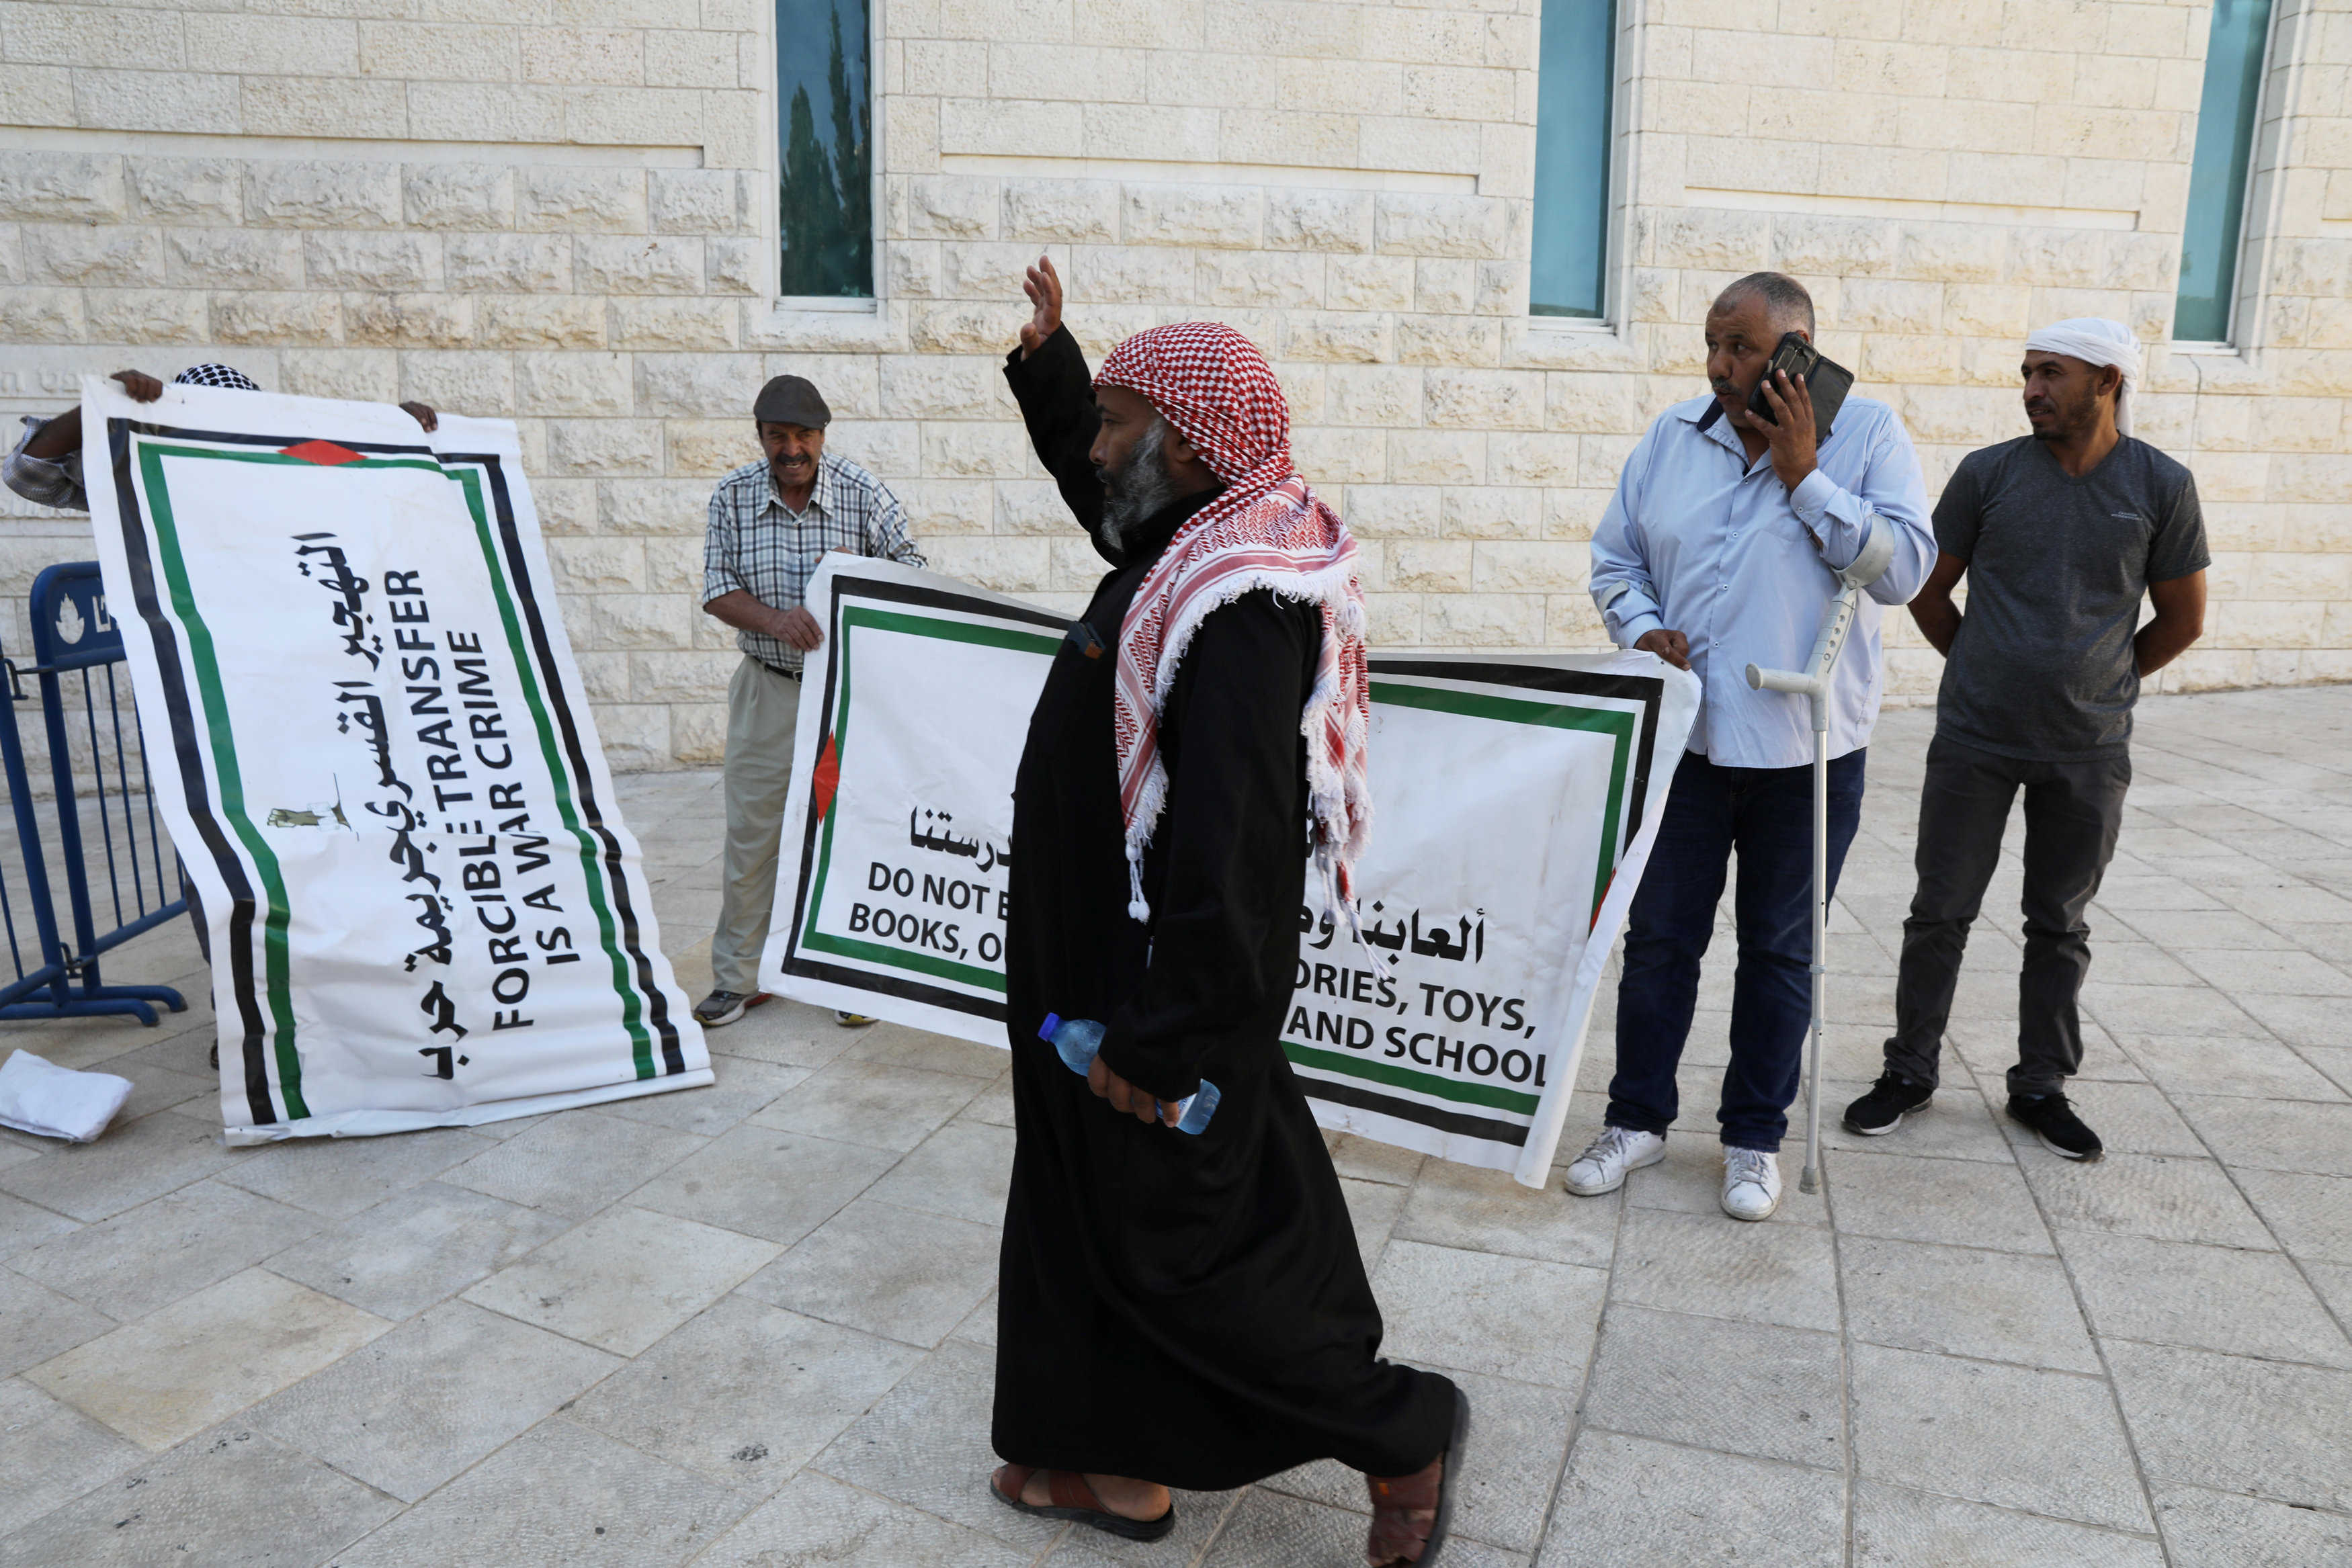 لافتات يحملها فلسطينيون لإدانة الانتهاكات الإسرائيلية